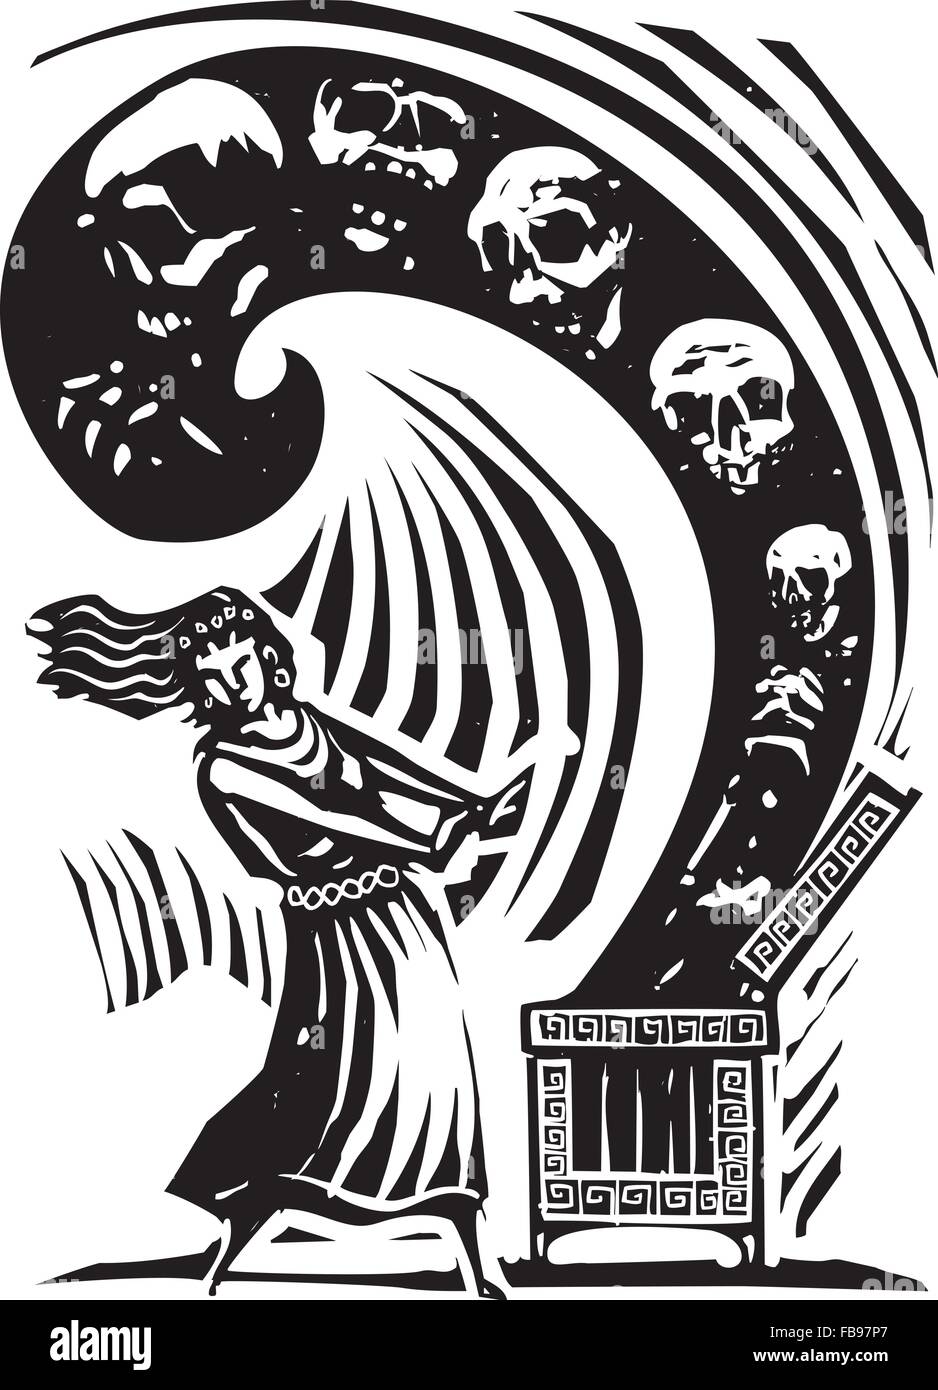 Gravure sur bois de style libre expressionniste le mythe grec d'ouvrir la boîte de Pandore des maux du monde Illustration de Vecteur